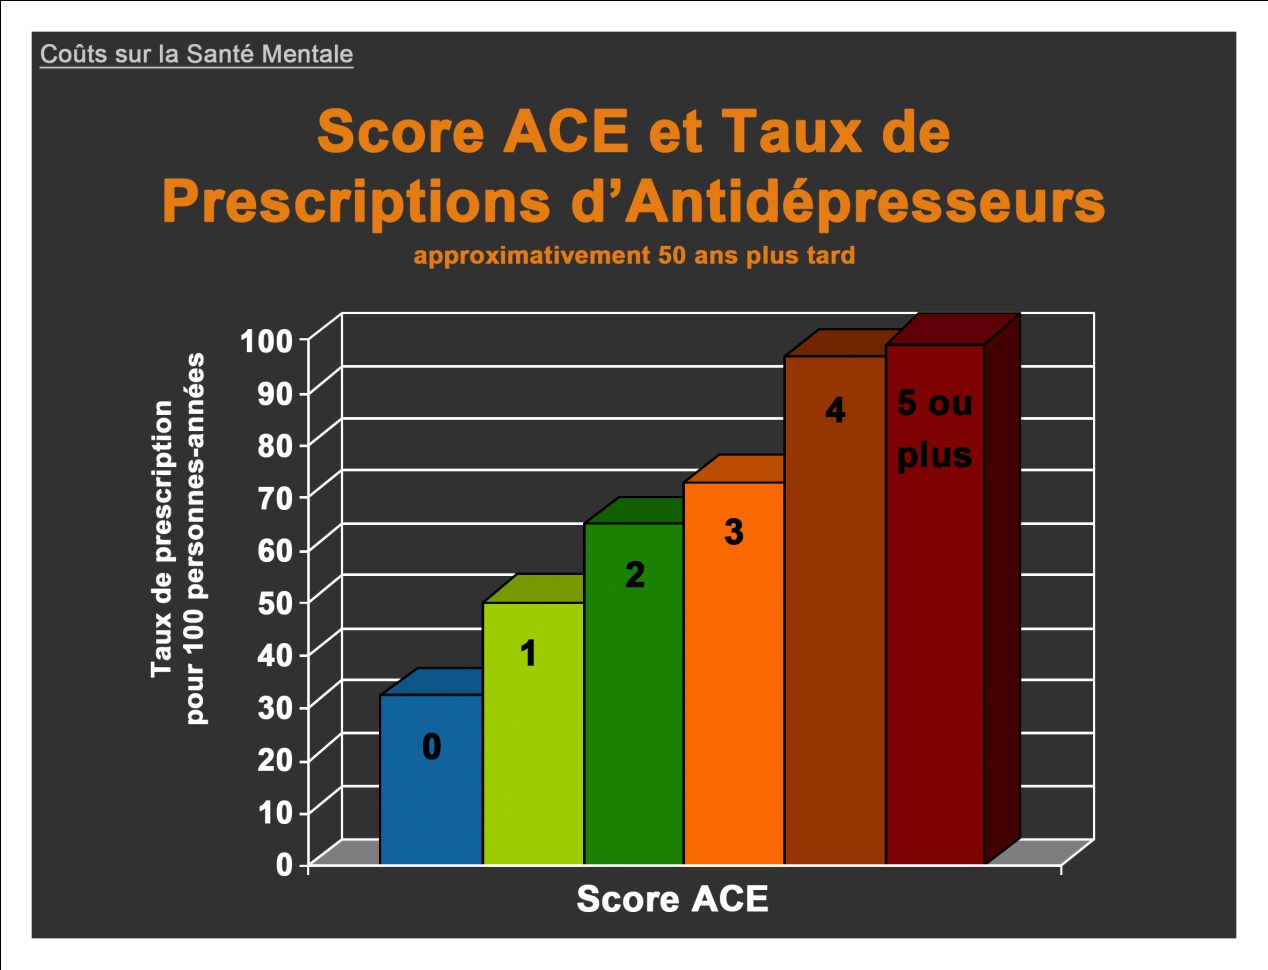 Score ACE et Taux de Prescriptions d'Antidépresseurs